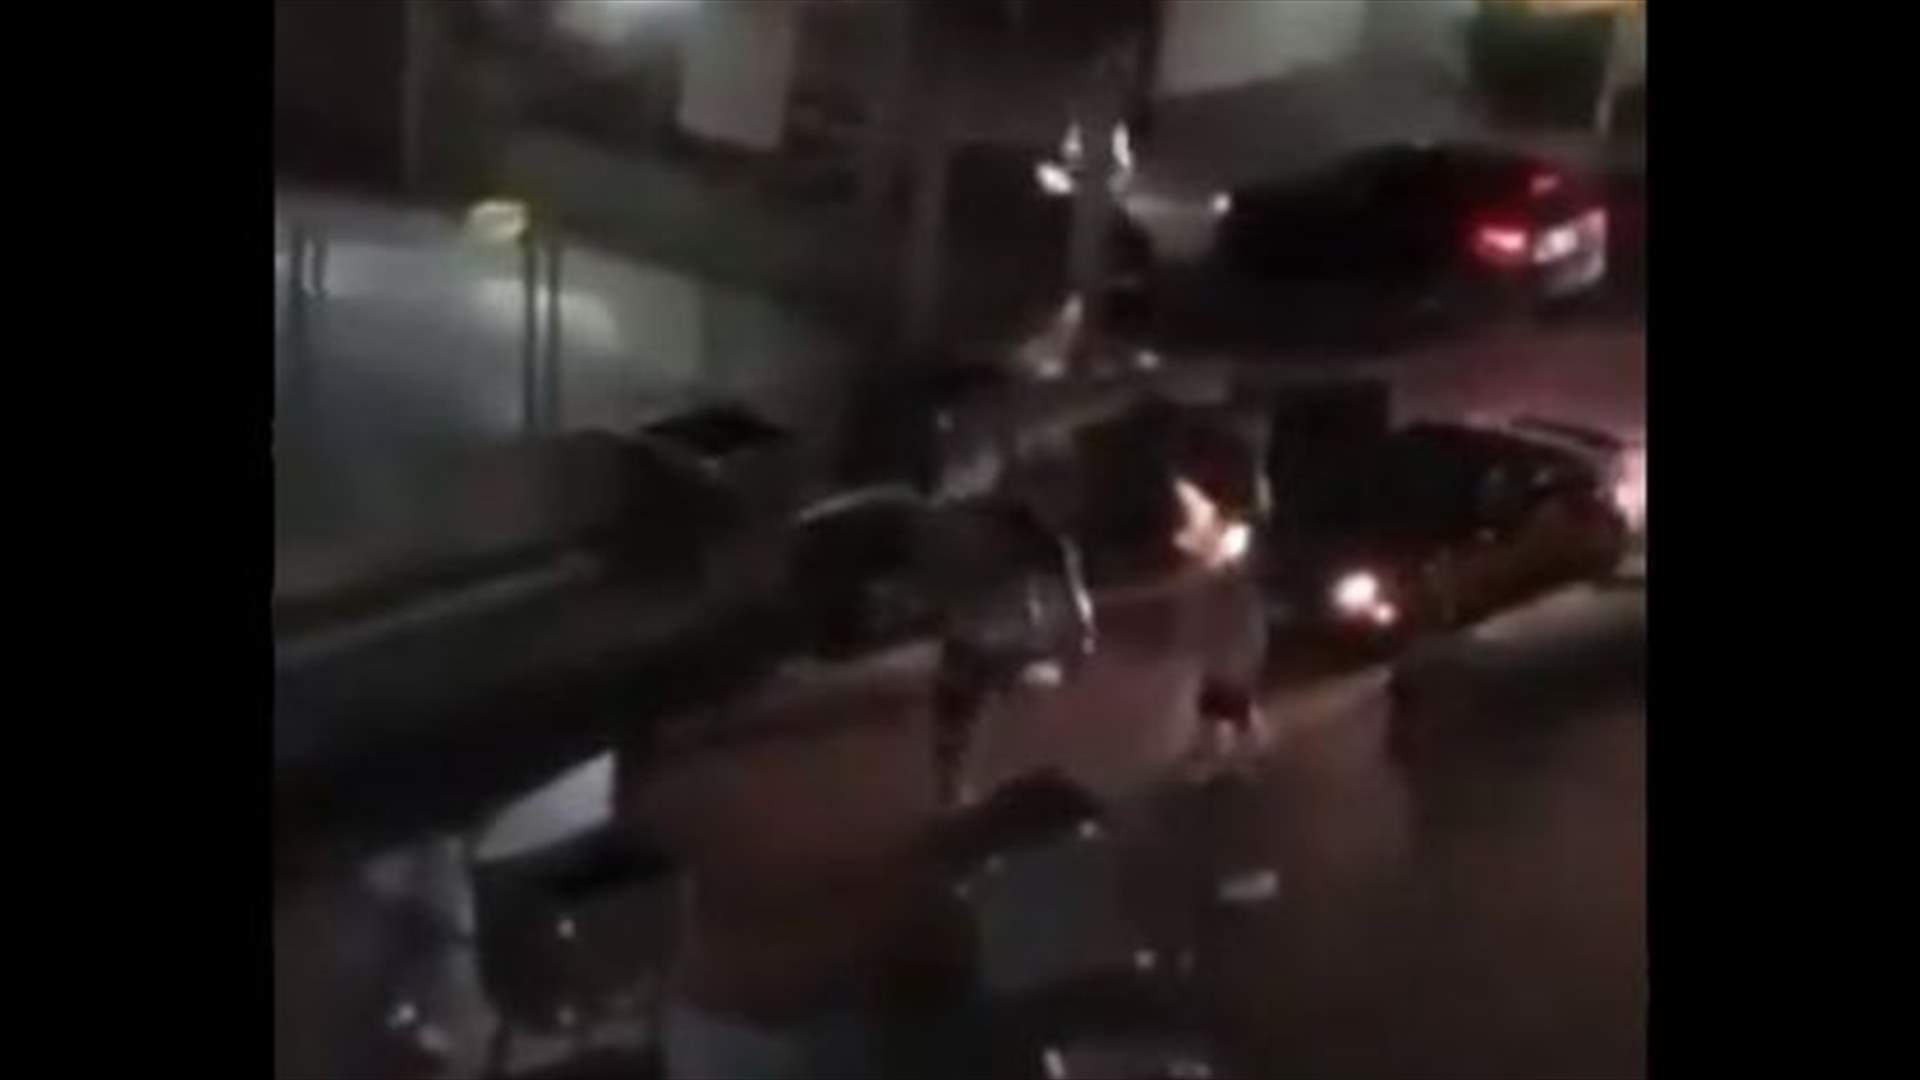 لحظة اصطدام سيارة بحاوية وضعها معتصمون لقطع الطريق (فيديو)